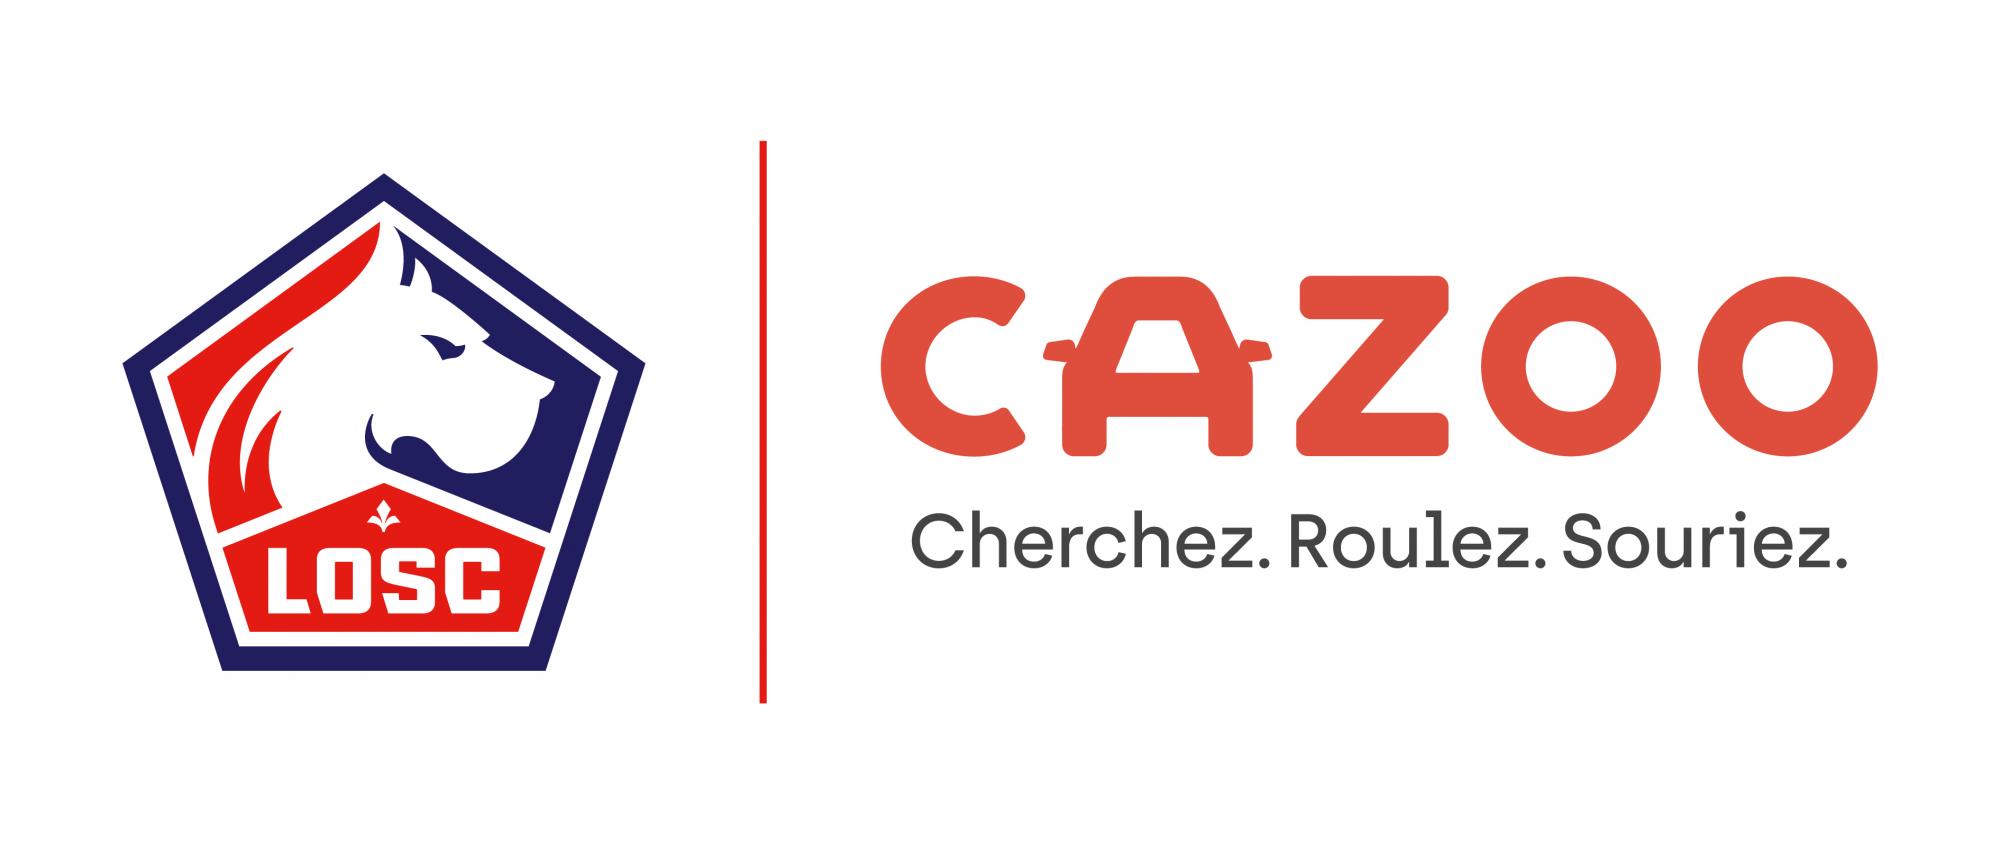 LOSC x Cazoo logo_FR.jpg